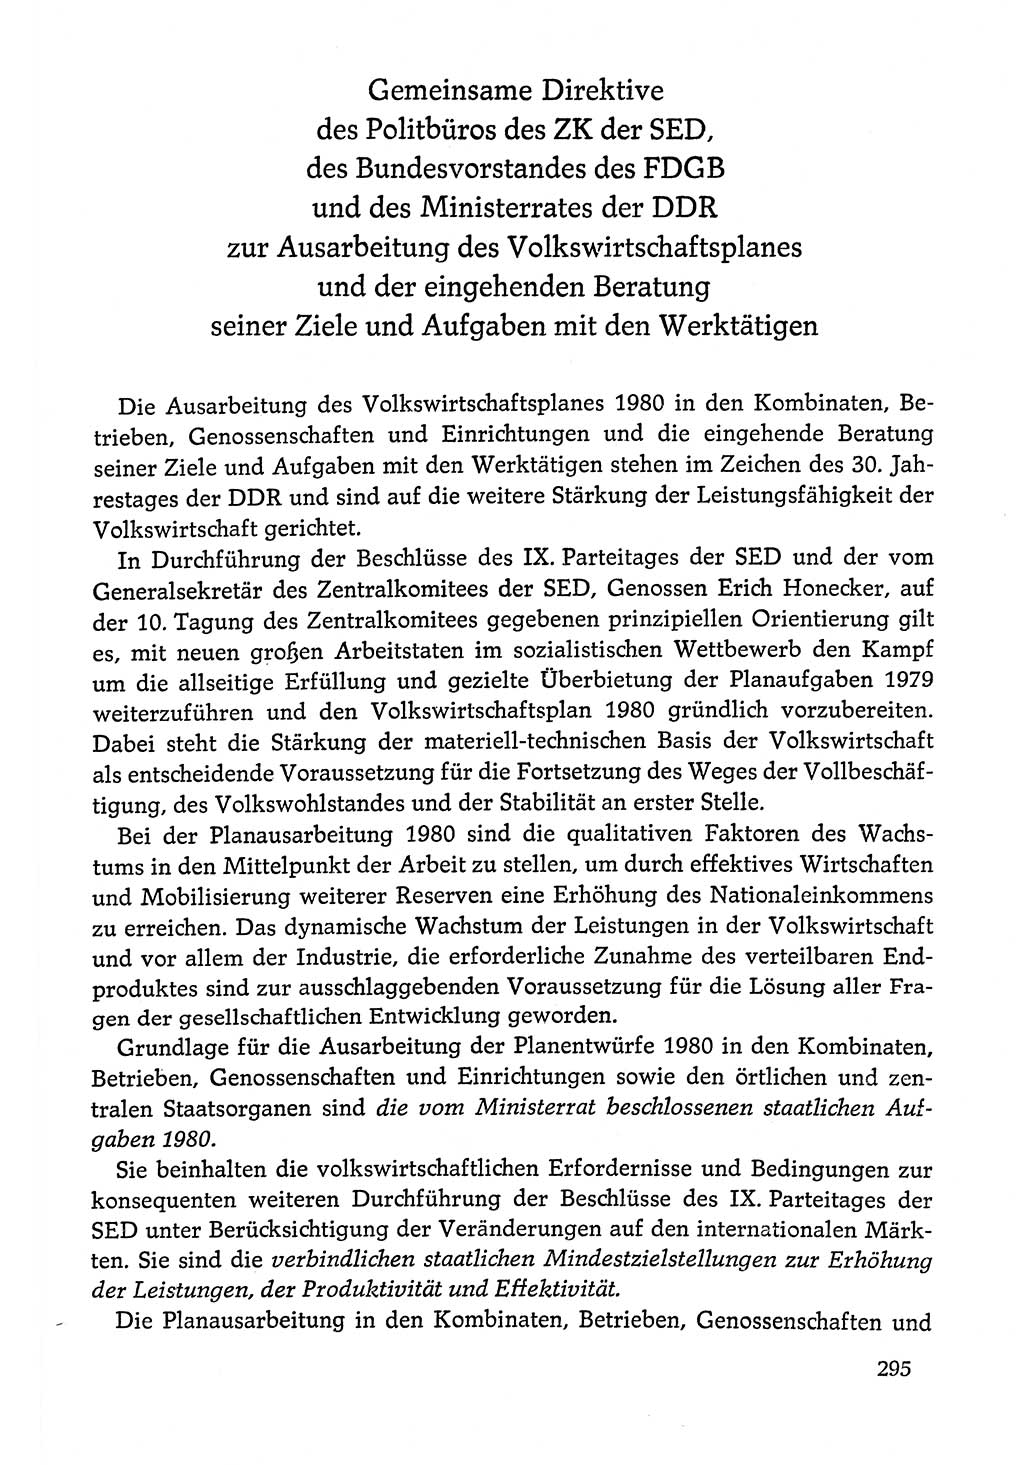 Dokumente der Sozialistischen Einheitspartei Deutschlands (SED) [Deutsche Demokratische Republik (DDR)] 1978-1979, Seite 295 (Dok. SED DDR 1978-1979, S. 295)